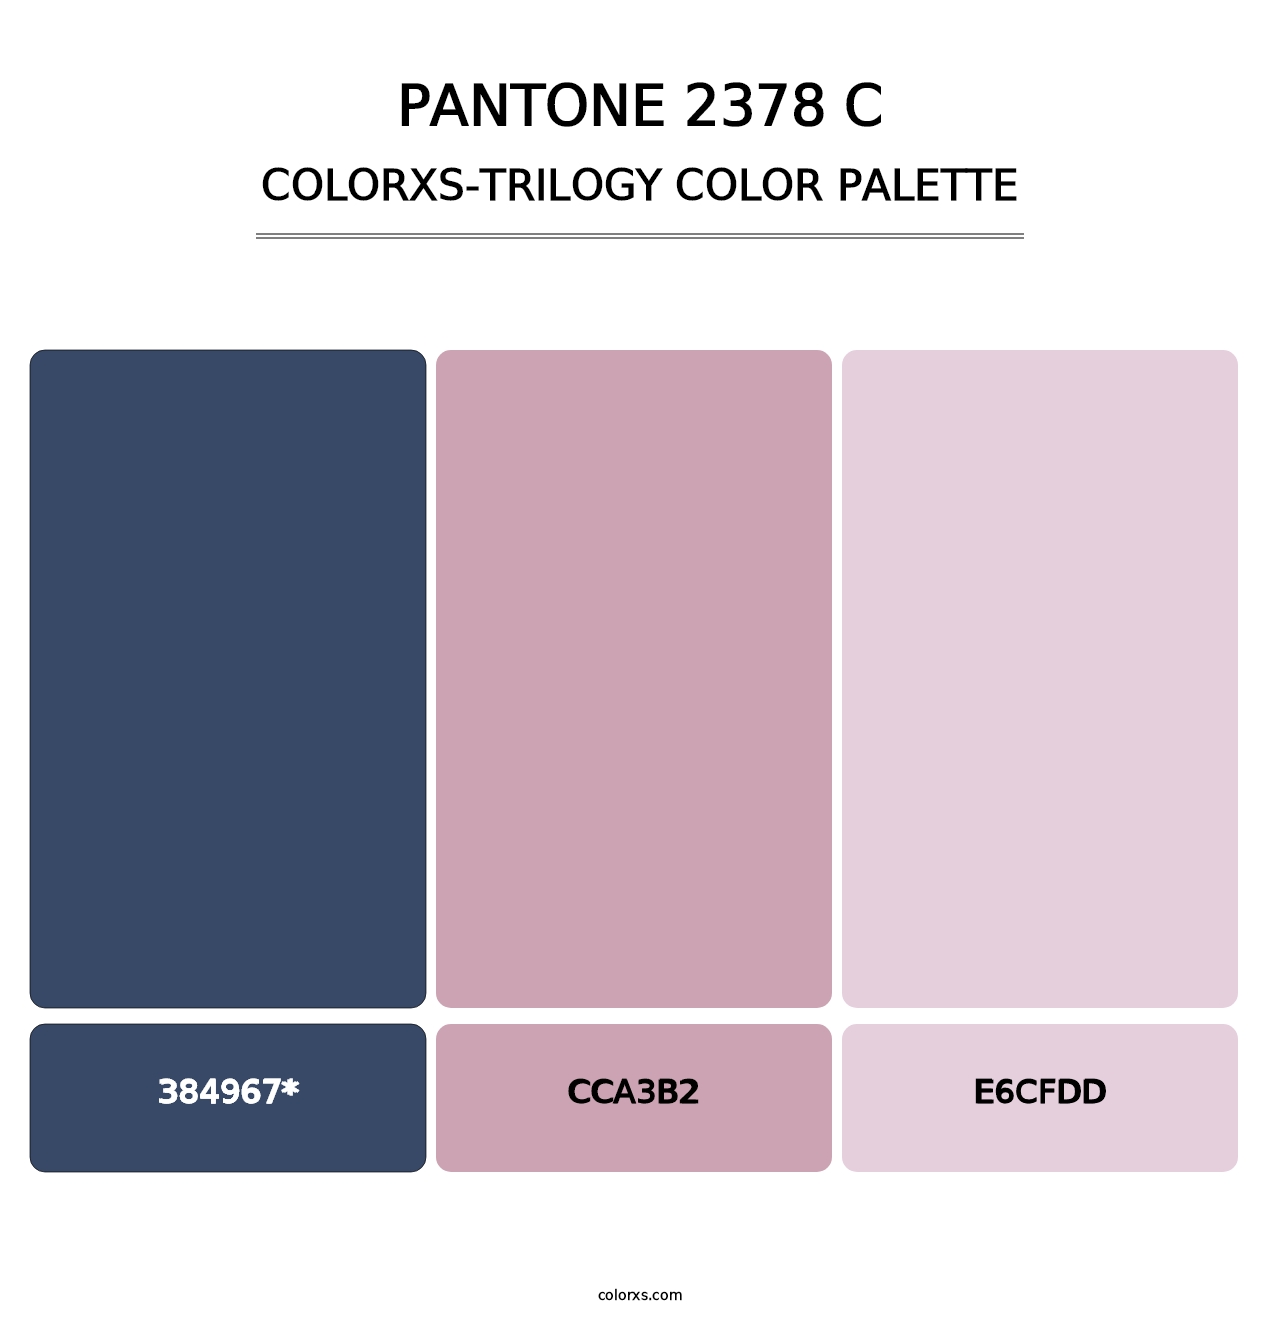 PANTONE 2378 C - Colorxs Trilogy Palette